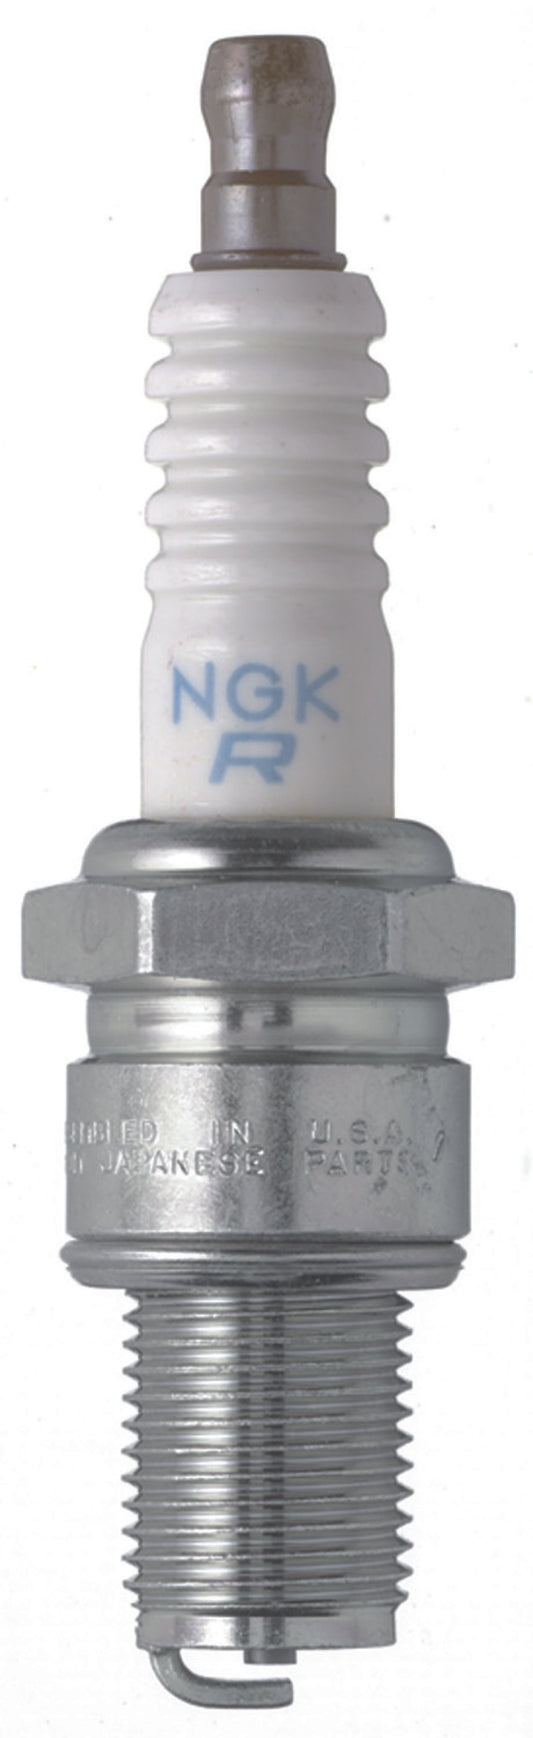 NGK Standard Spark Plug Box of 4 (BR10ES SOLID)